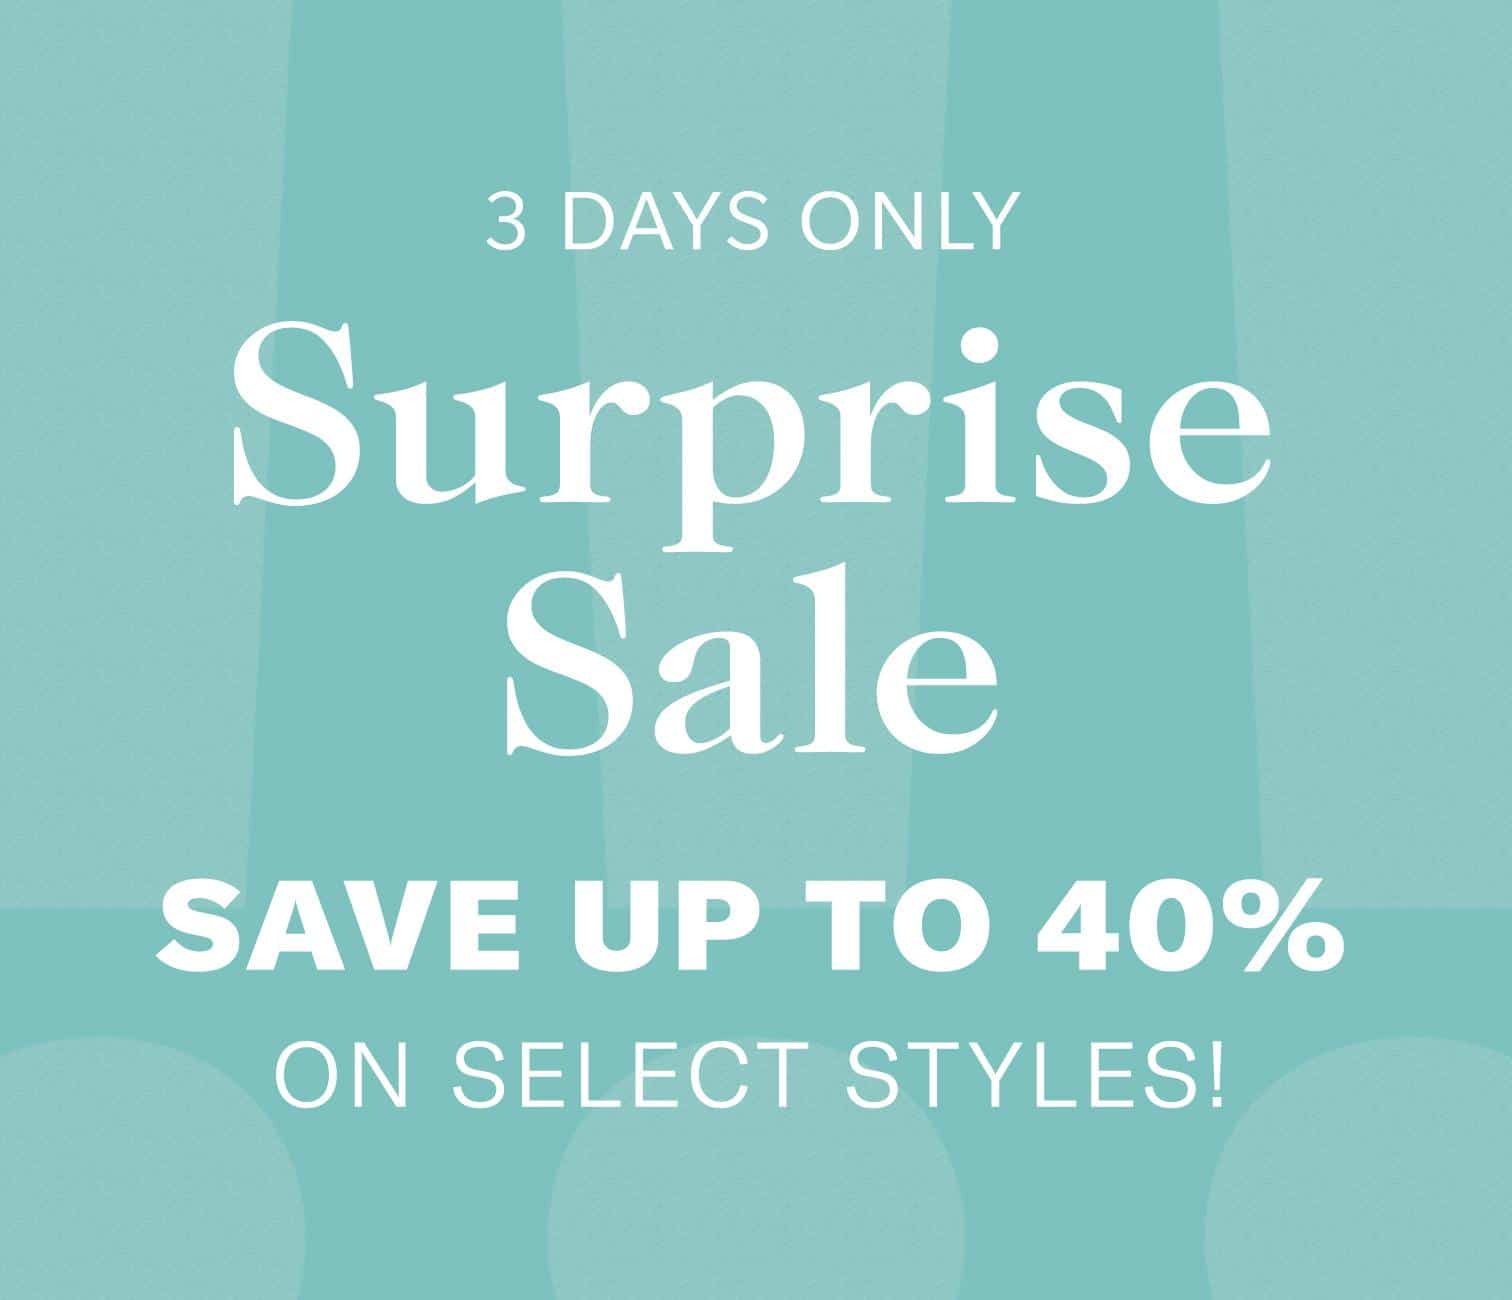 shopbop surprise sale save 40% 